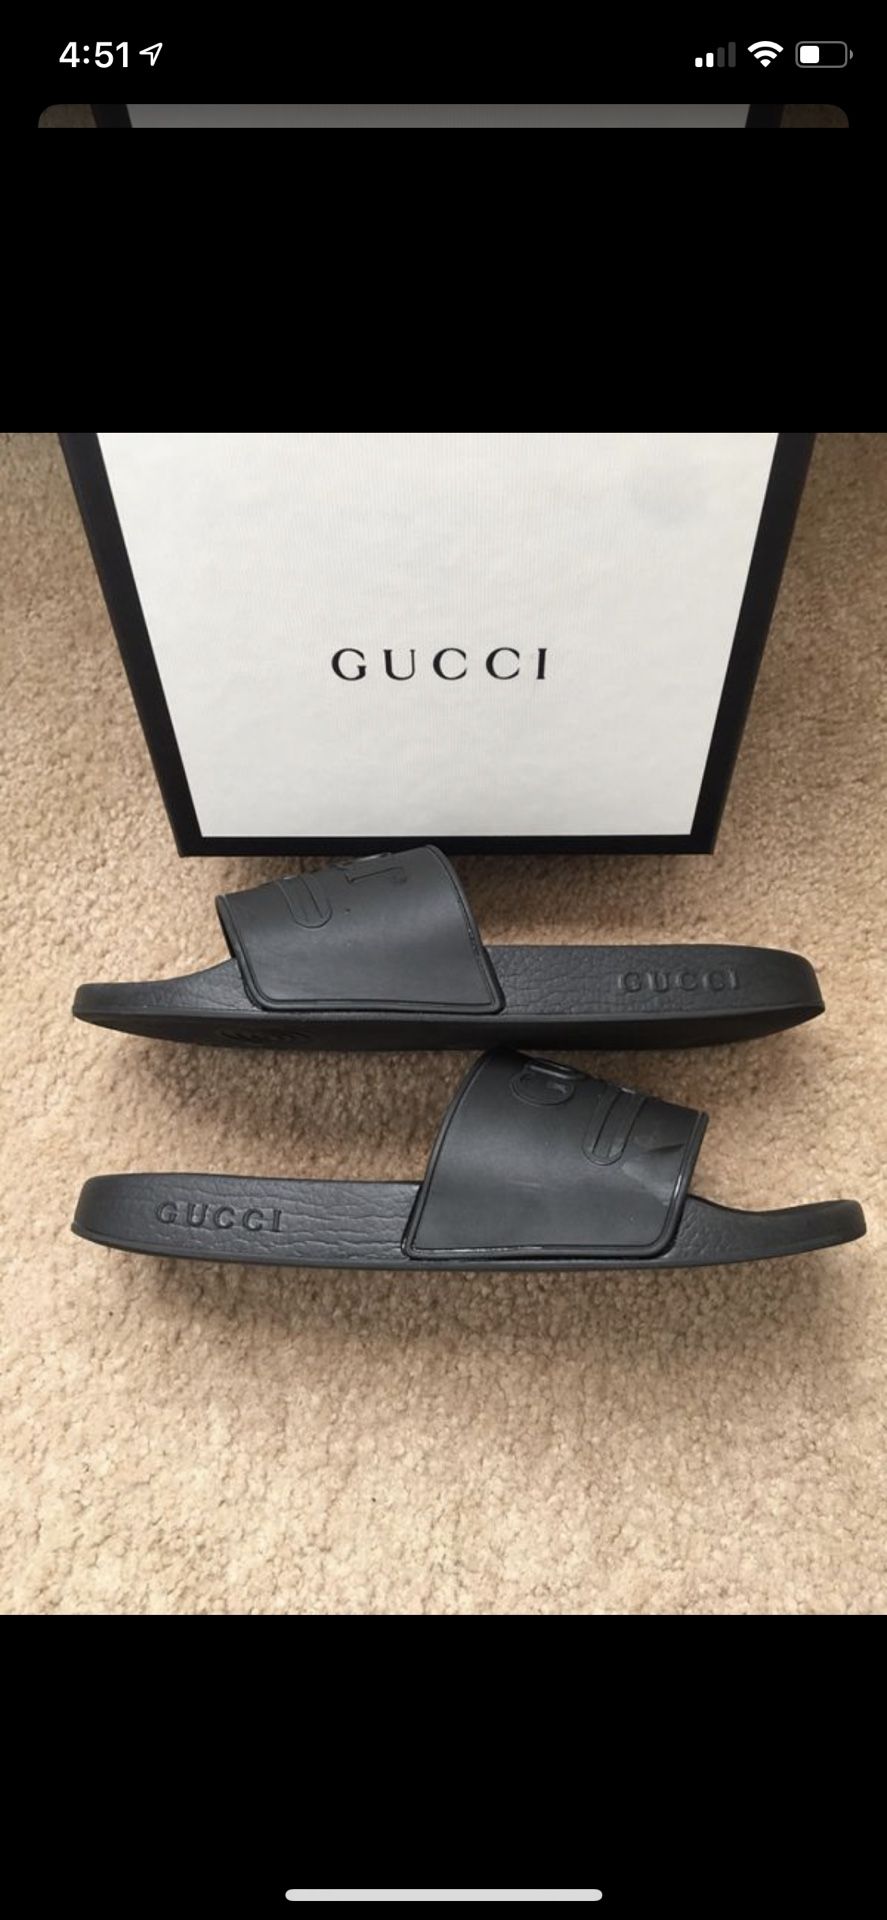 Gucci’s slides